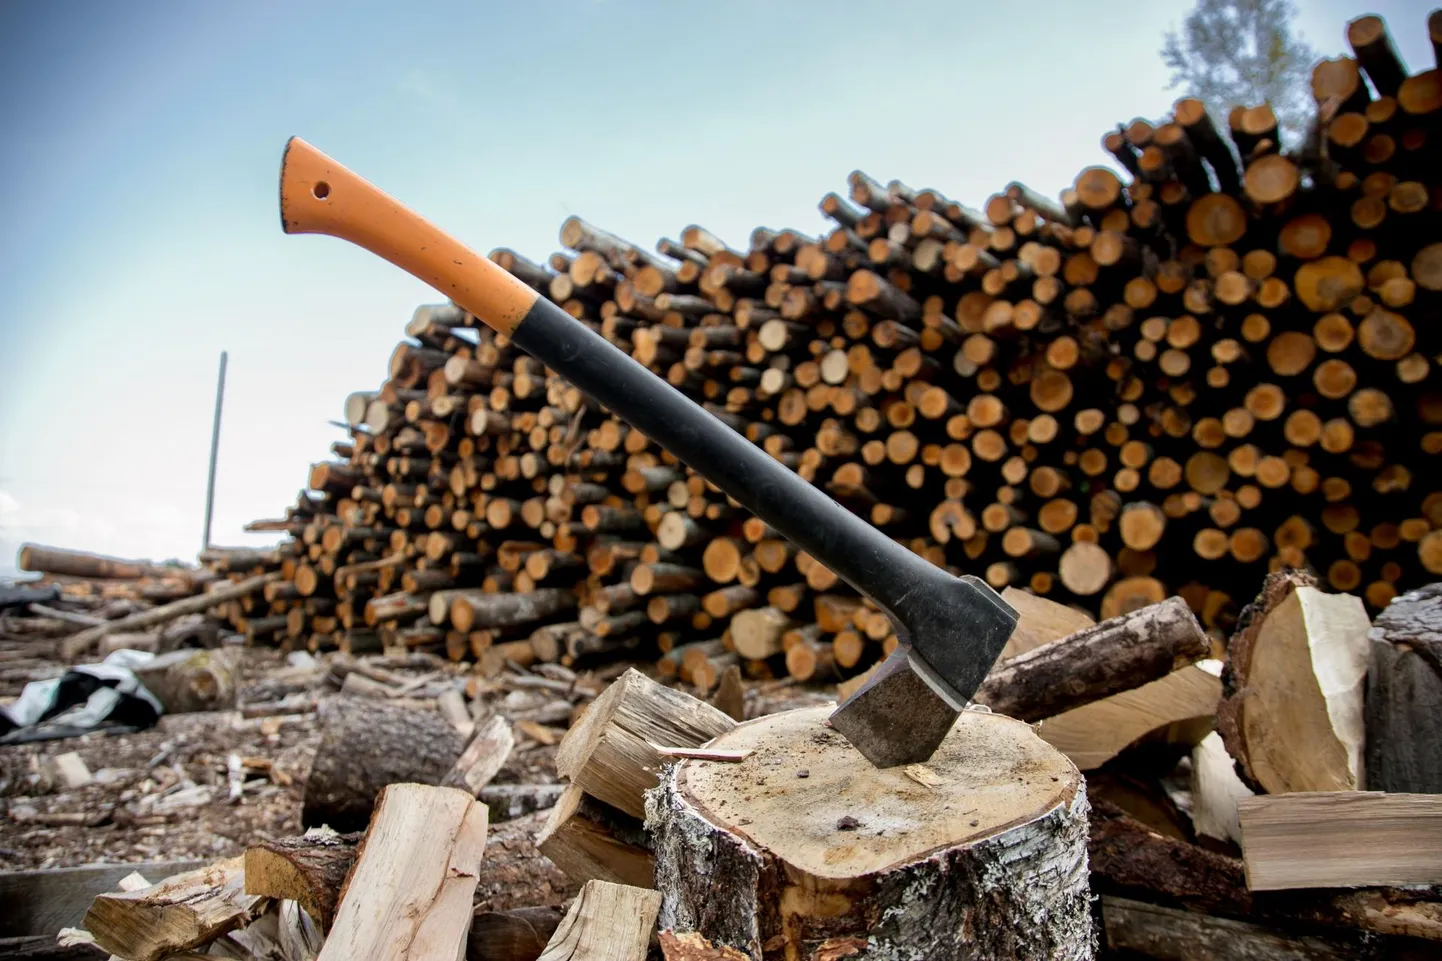 Хорошие запасы древесины на зиму всегда были символом безопасности для сельских жителей. Если у вас есть дрова, вы можете спокойно пережить зиму. Поскольку многие семьи перешли с дровяного отопления на комбинированное, большие объемы заказываются редко, в среднем закупается пять кубометров сырых дров.